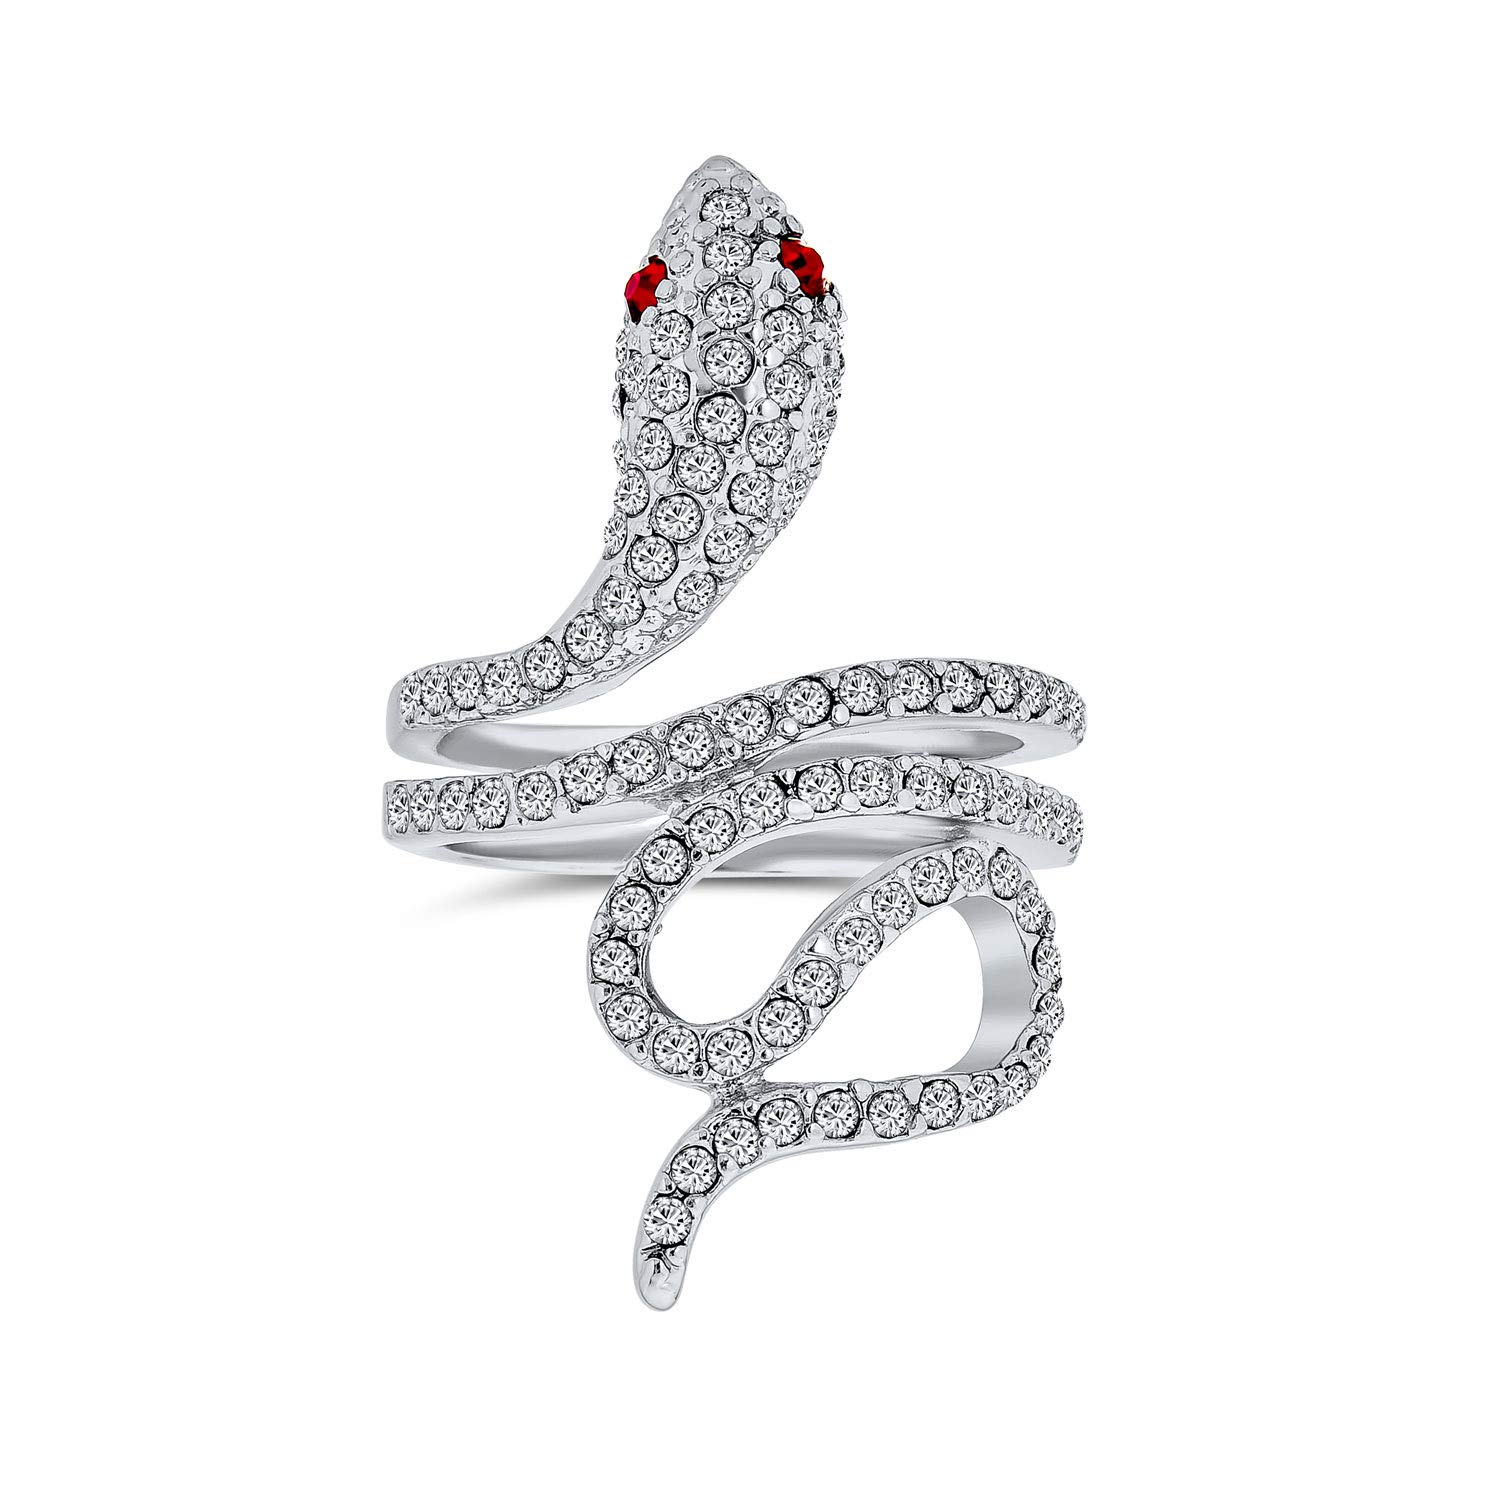 Bling Jewelry Schlangenförmiger Spiralwickel Fashion Ring Mit Rotem Auge Aus Cubic Zirkonia Pave Cz Und Versilbertem Messing Für Frauen